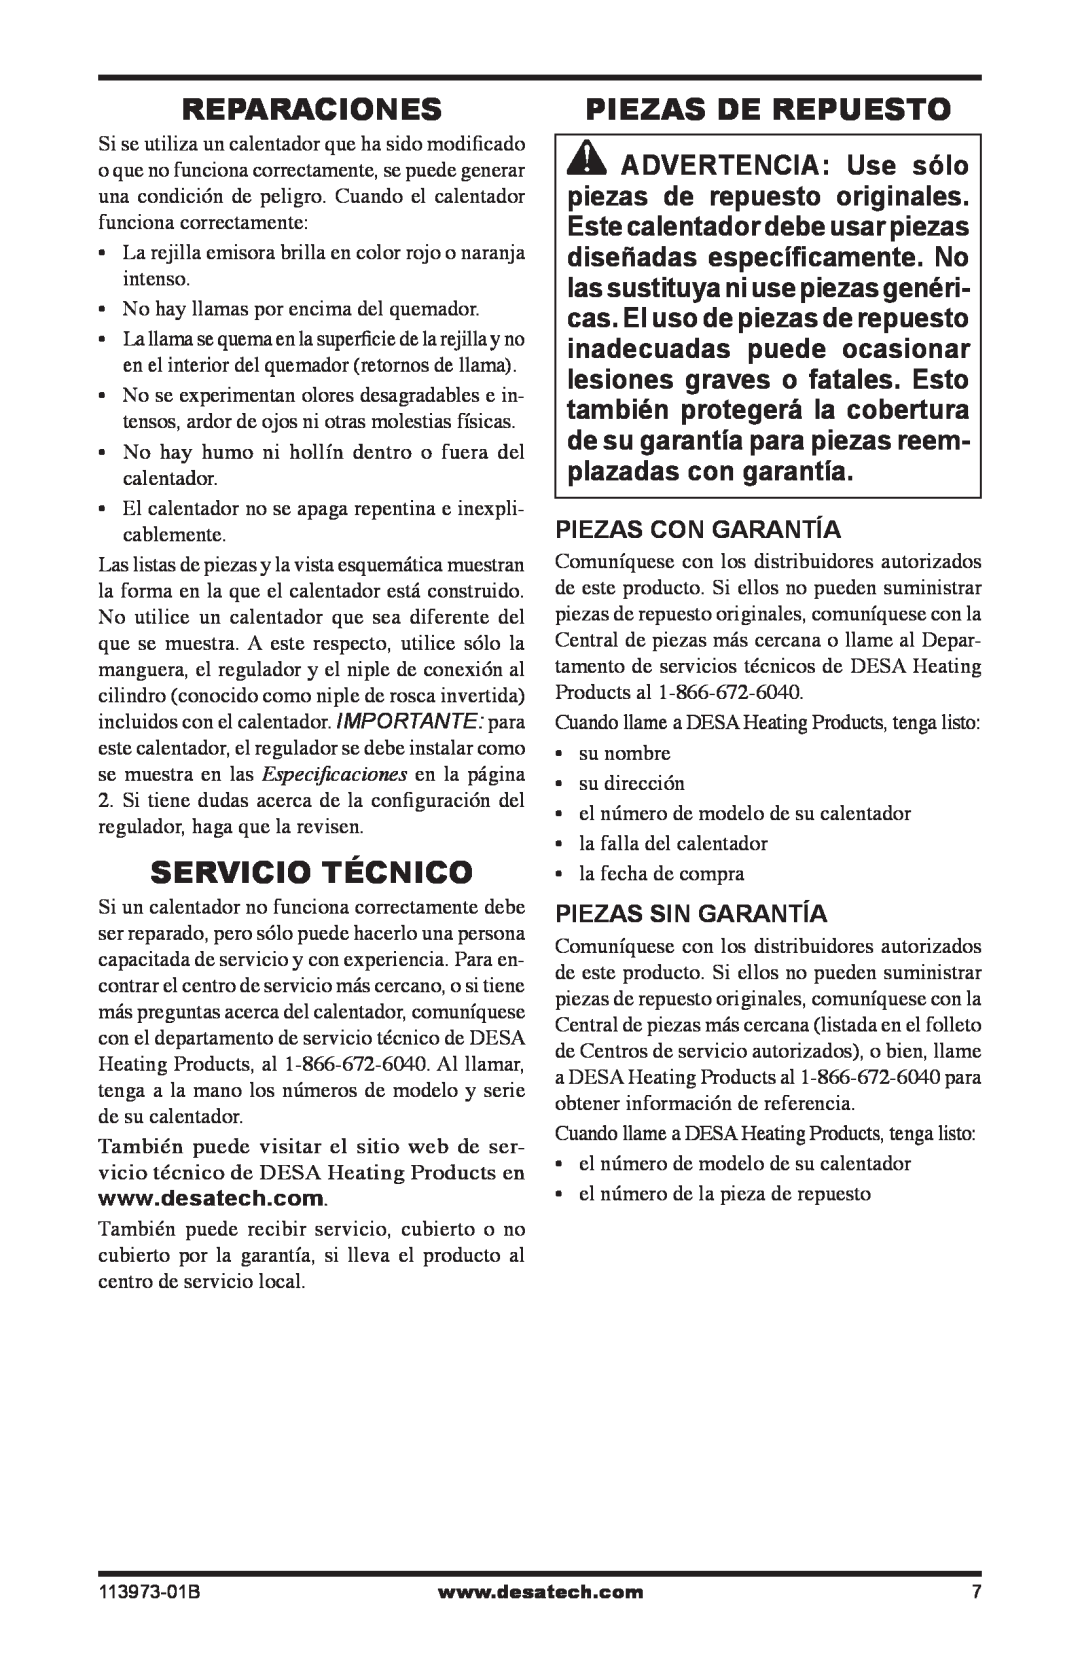 Desa AND TT30 10 owner manual Reparaciones, Servicio Técnico, Piezas De Repuesto, Piezas Con Garantía, Piezas Sin Garantía 